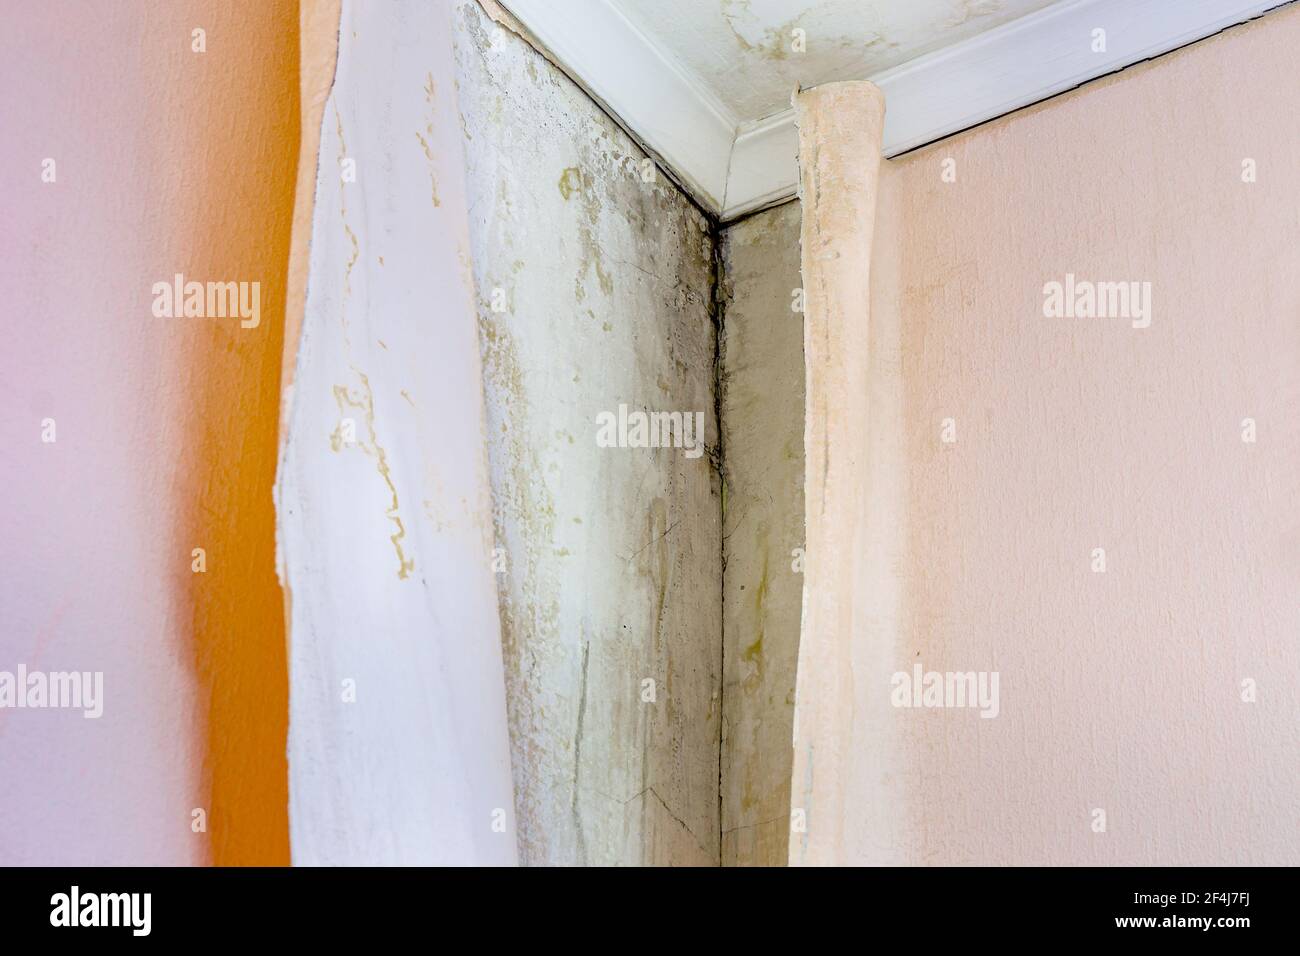 Schwarzer Schimmel, Aspergillus niger, ist in einem feuchten, unbelüfteten  Raum in der Ecke unter der Tapete aufgetaucht Stockfotografie - Alamy